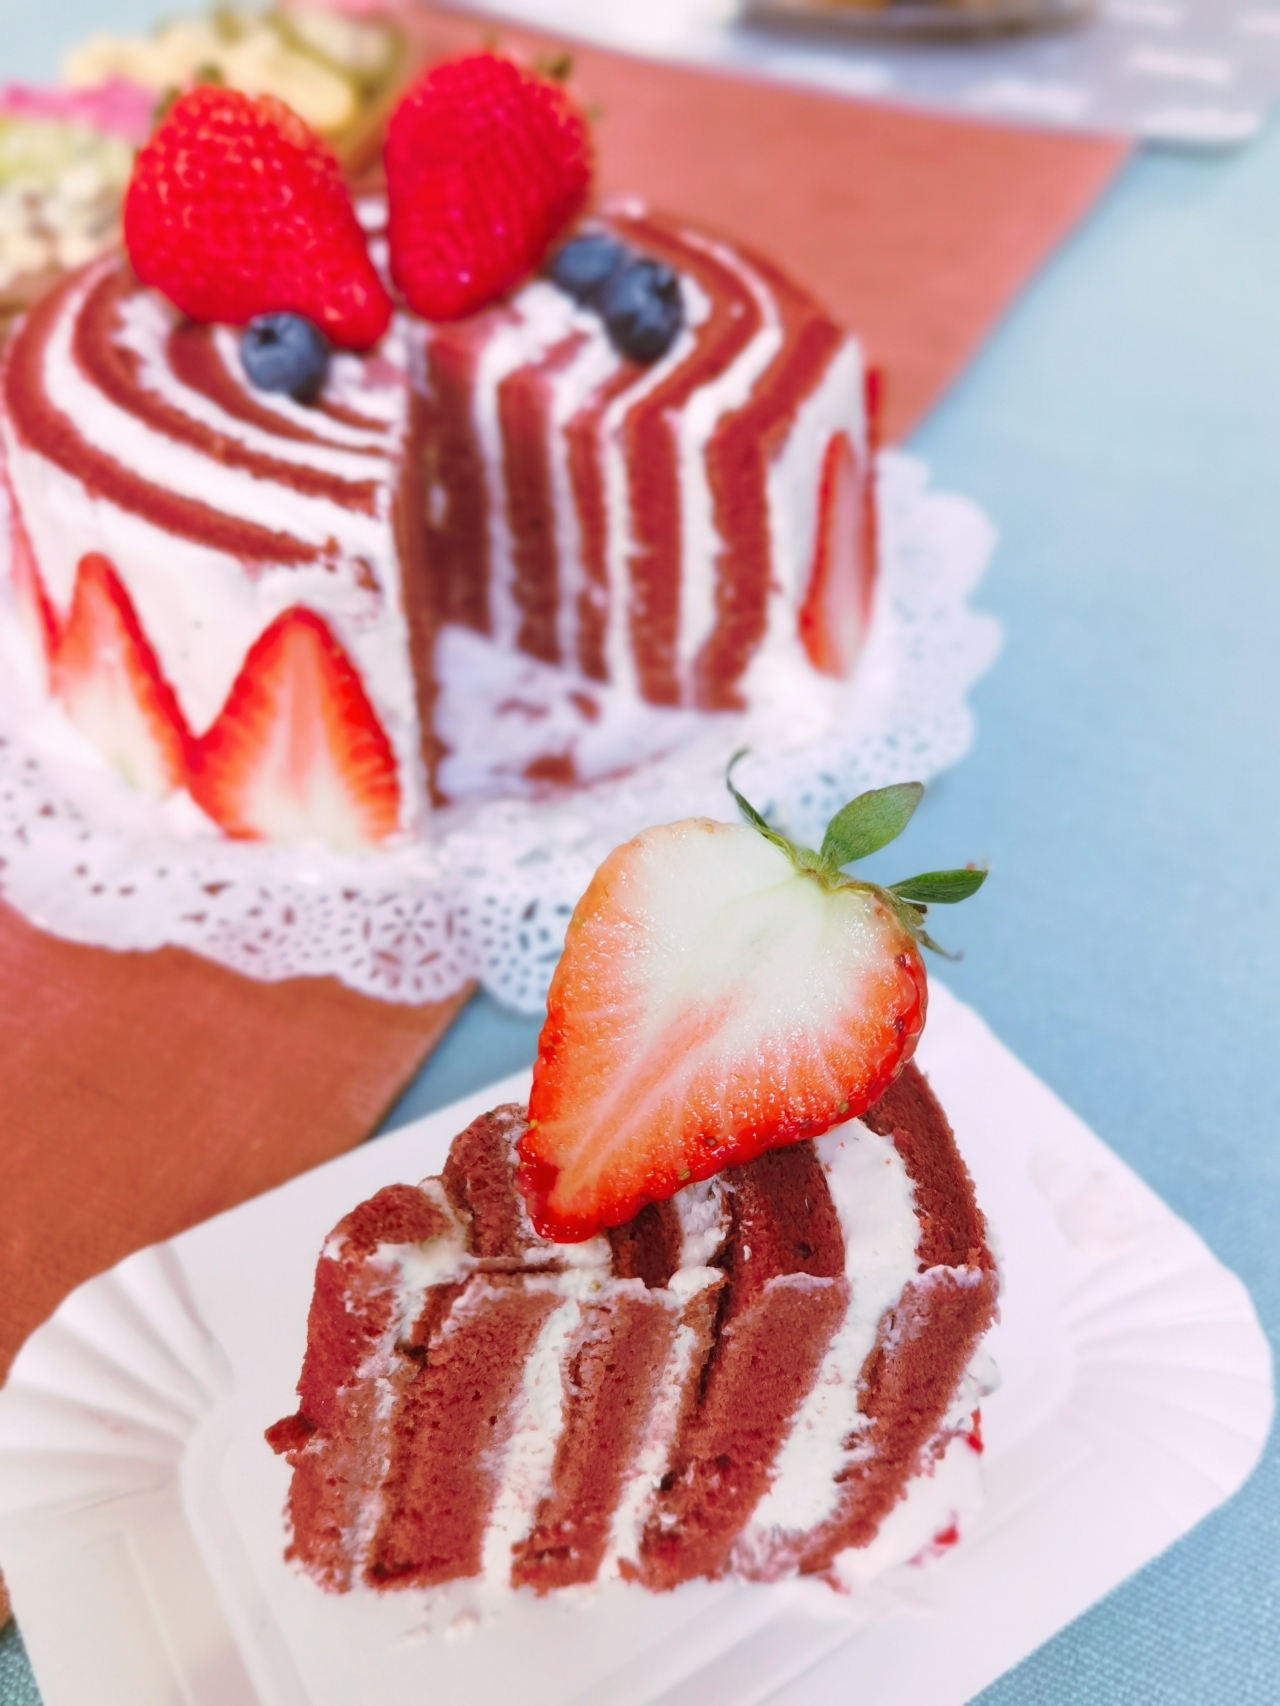 草莓漩涡年轮蛋糕🍓一圈又一圈，治愈且美好～